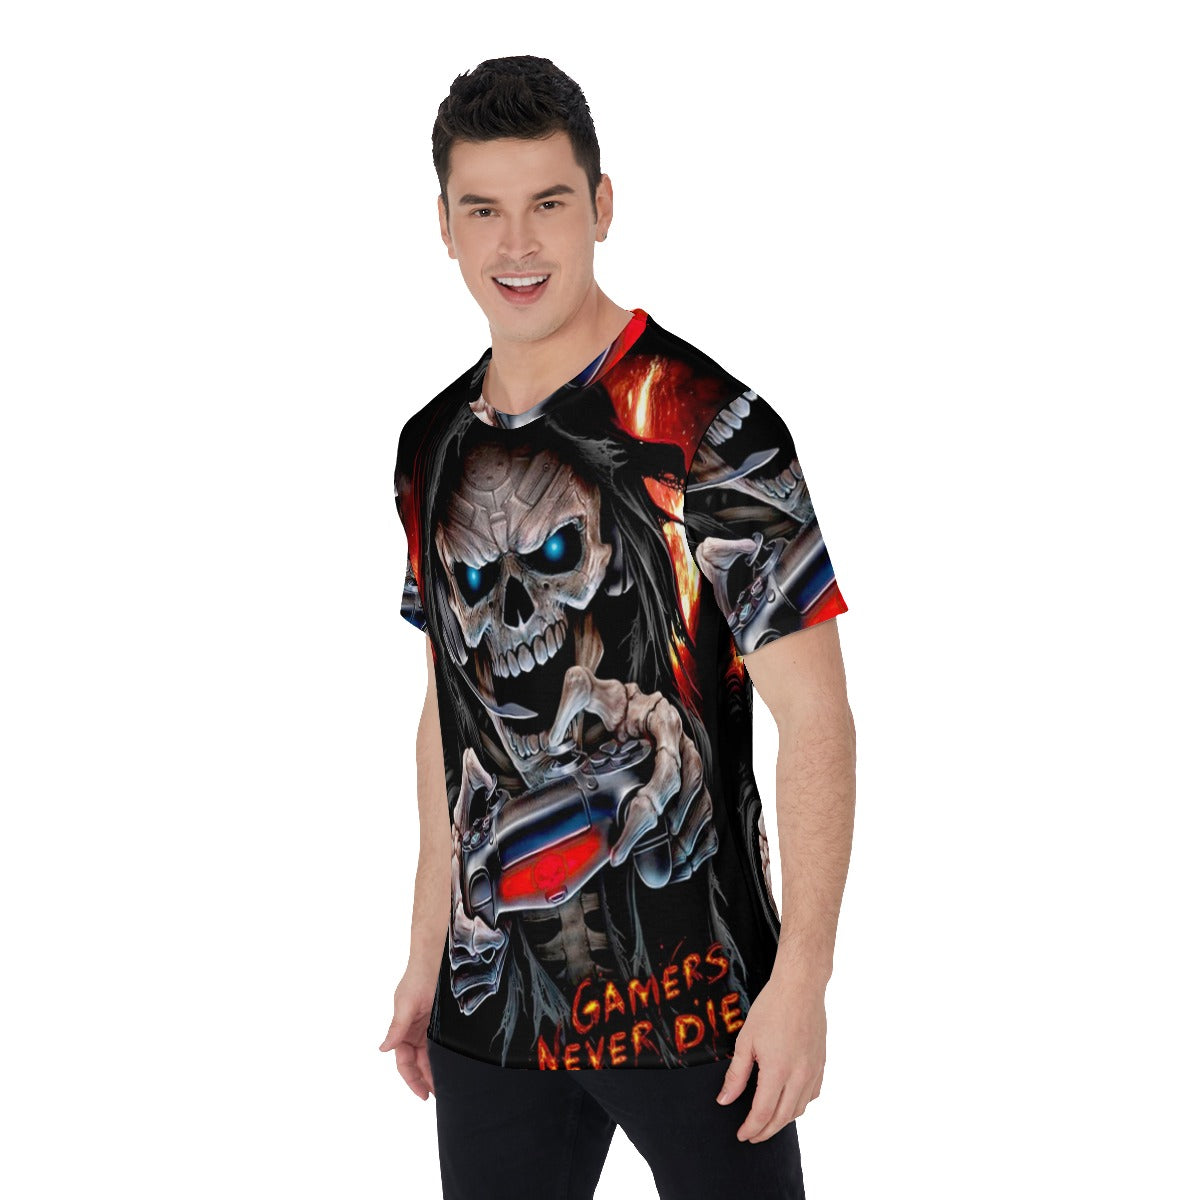 Grim reaper Men's O-Neck T-Shirt